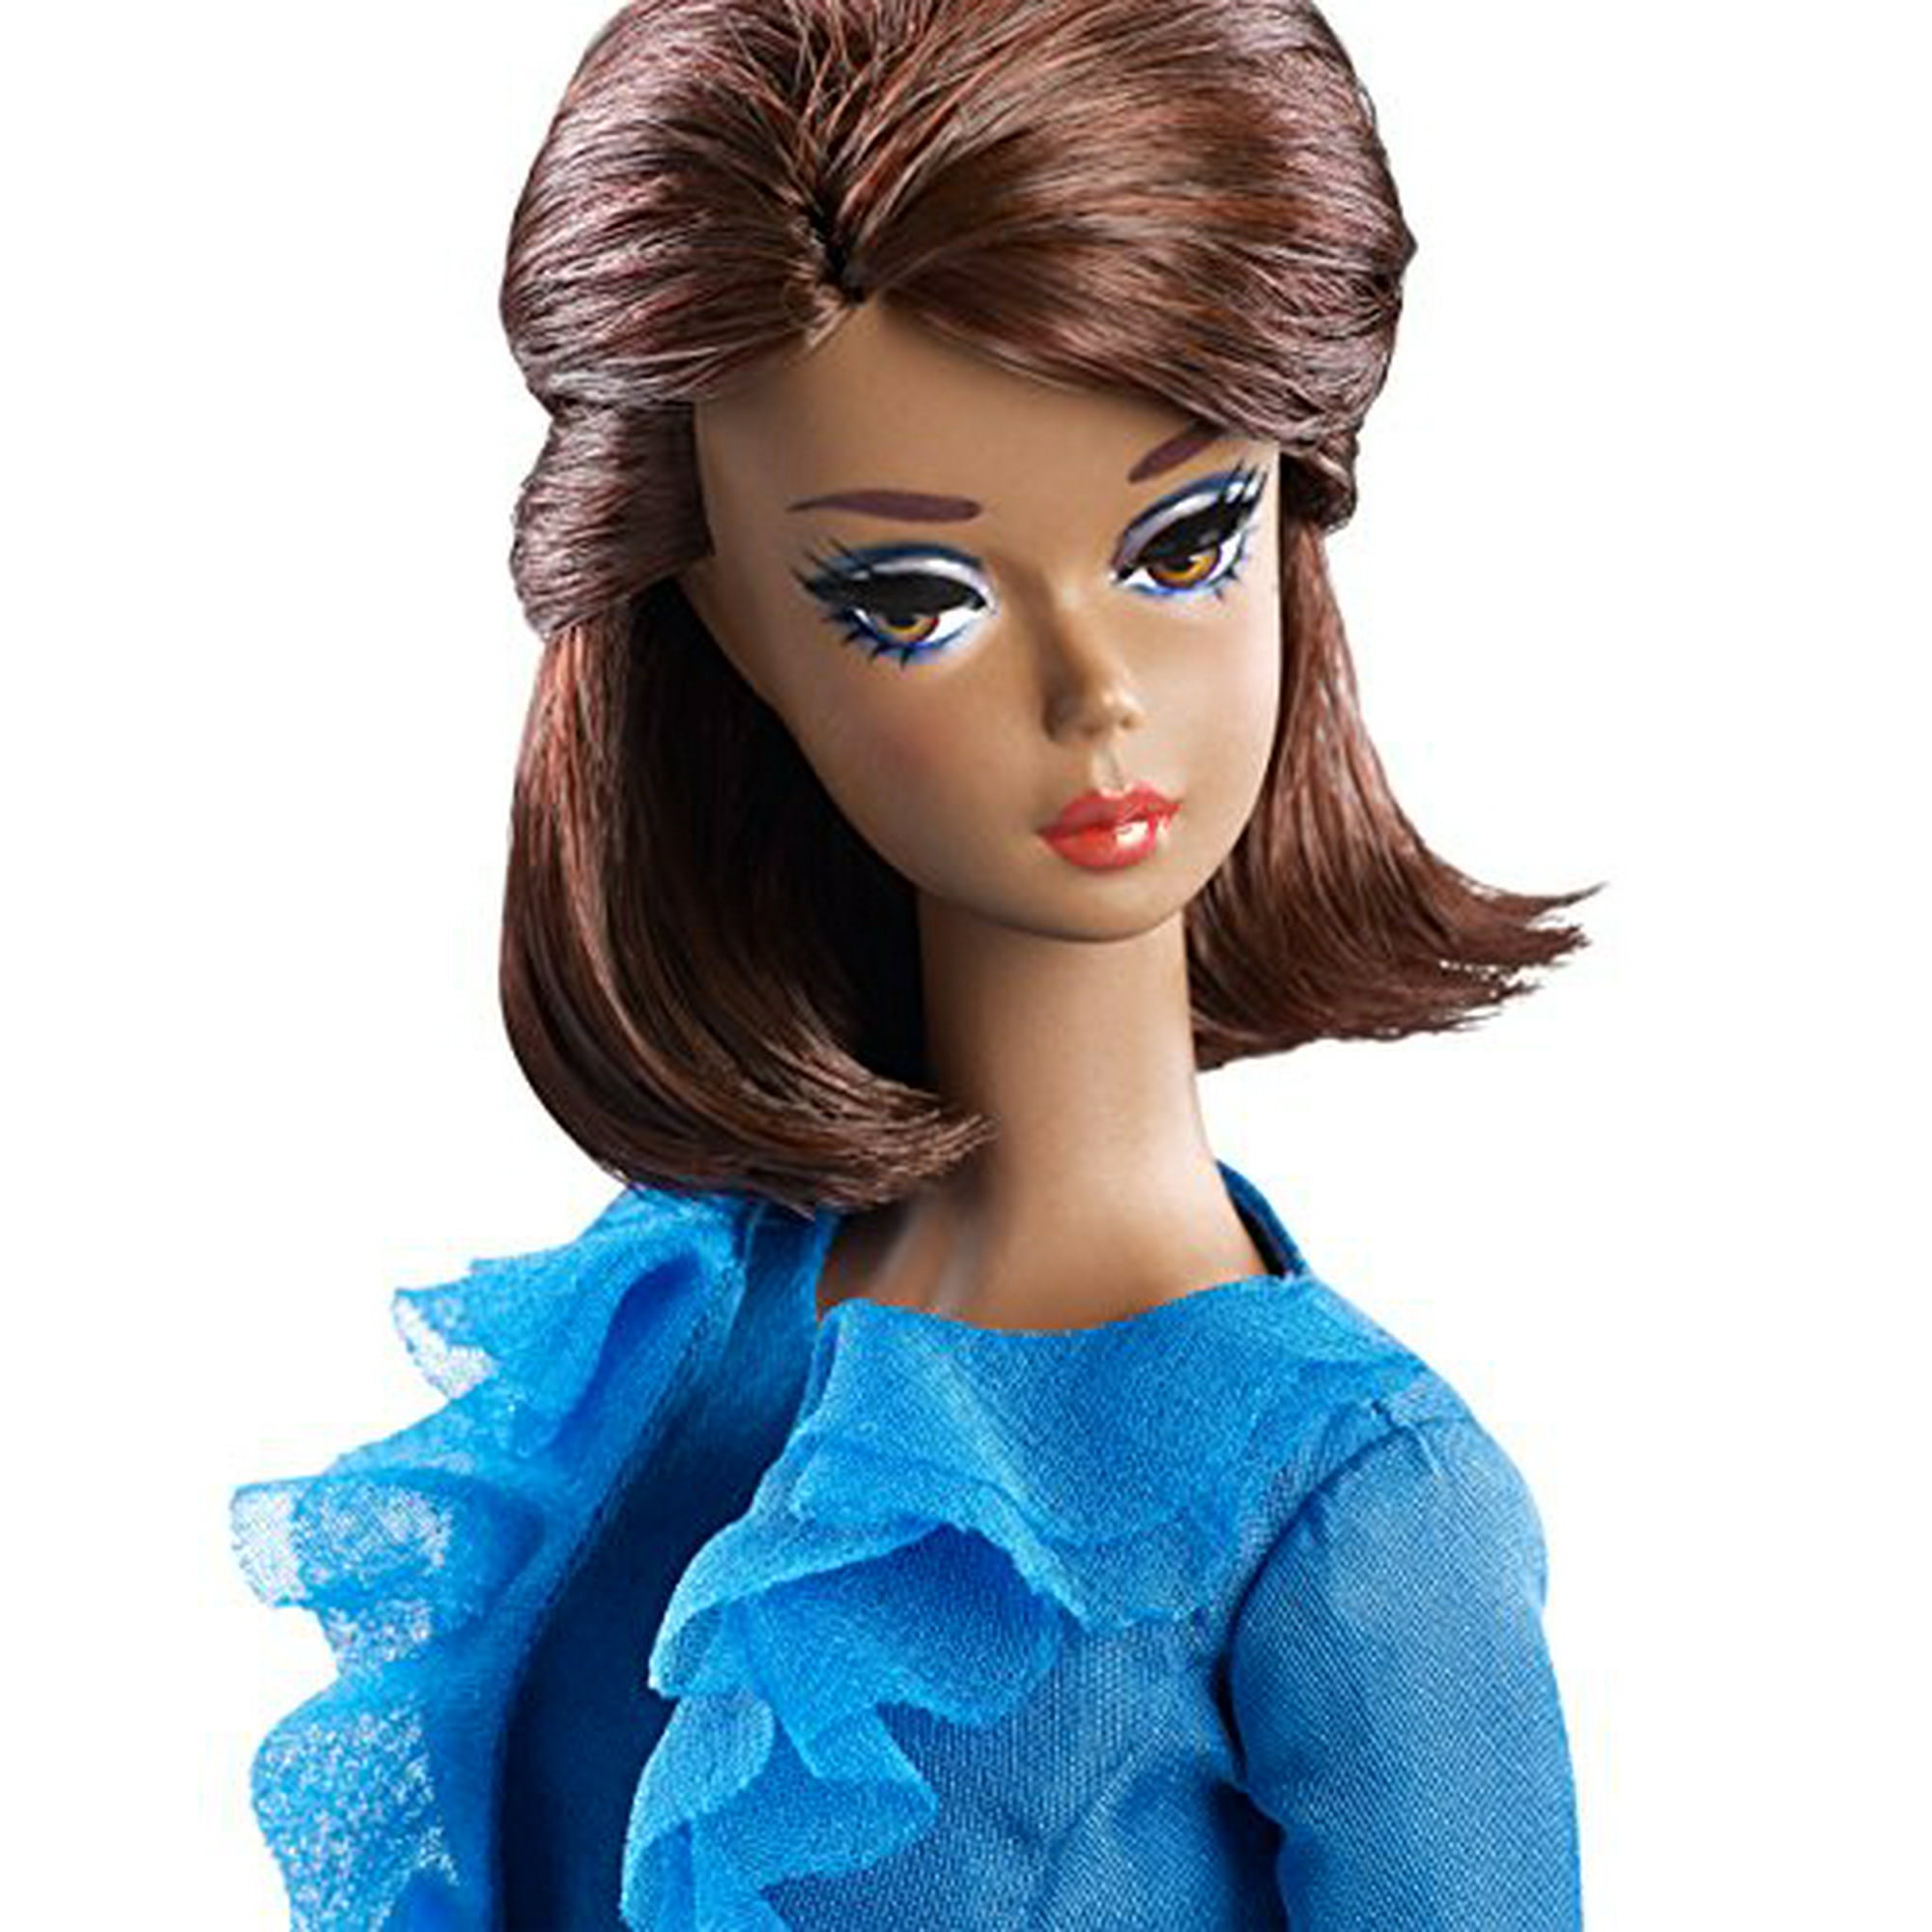 Barbie Fashion Model Collection Suit Doll Blue Mattel DGW57 